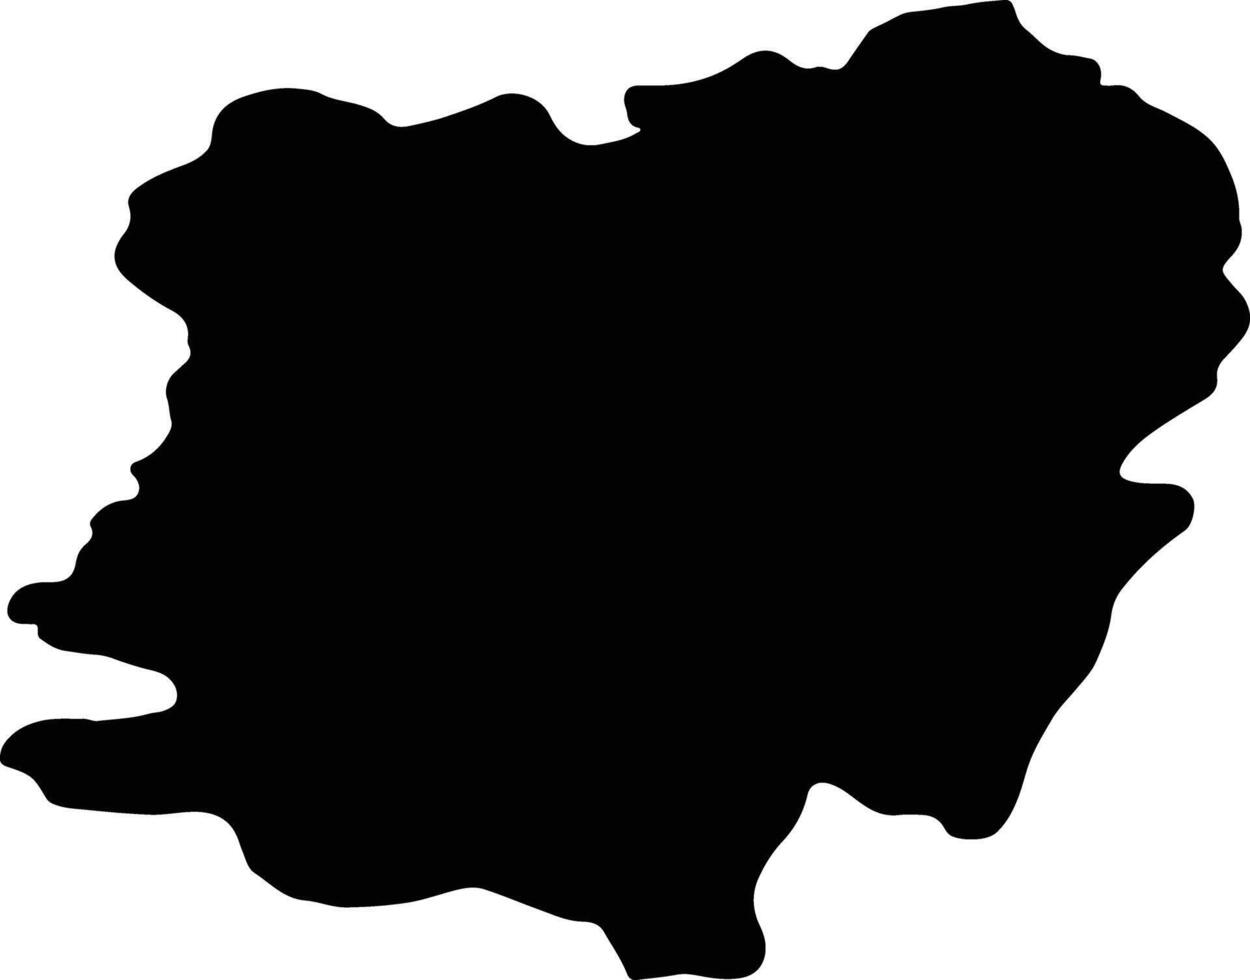 Caras-Severin Romania silhouette map vector